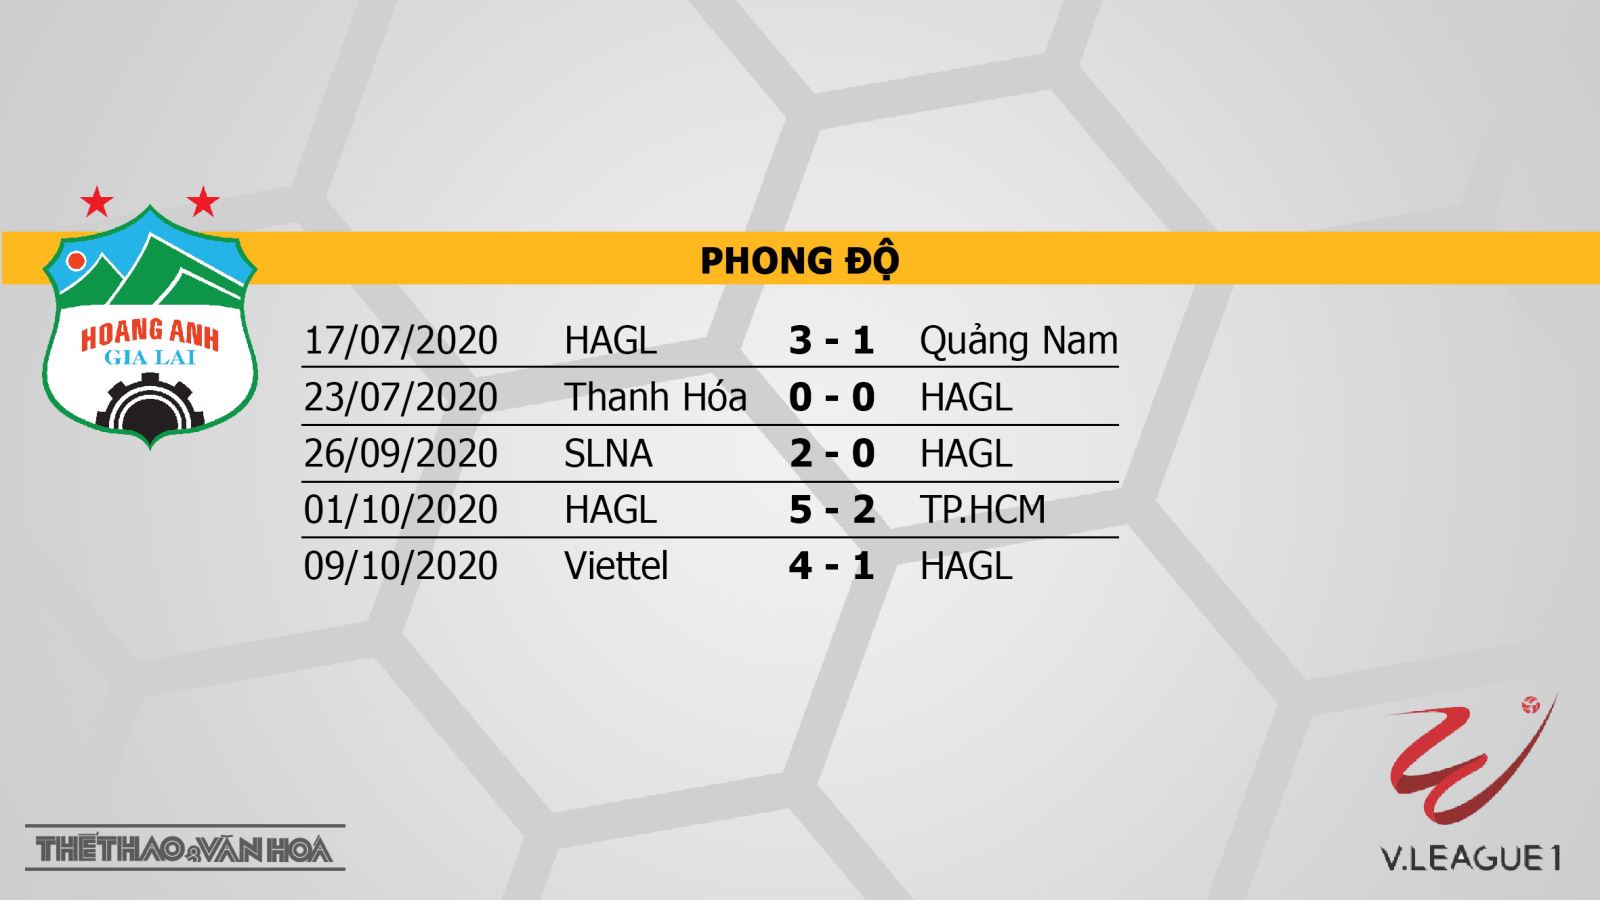 HAGL vs Hà Nội, HAGL, Hà Nội, nhận định bóng đá HAGL vs Hà Nội, nhận định HAGL vs Hà Nội, trực tiếp HAGL vs Hà Nội, nhận định bóng đá bóng đá, kèo bóng đá